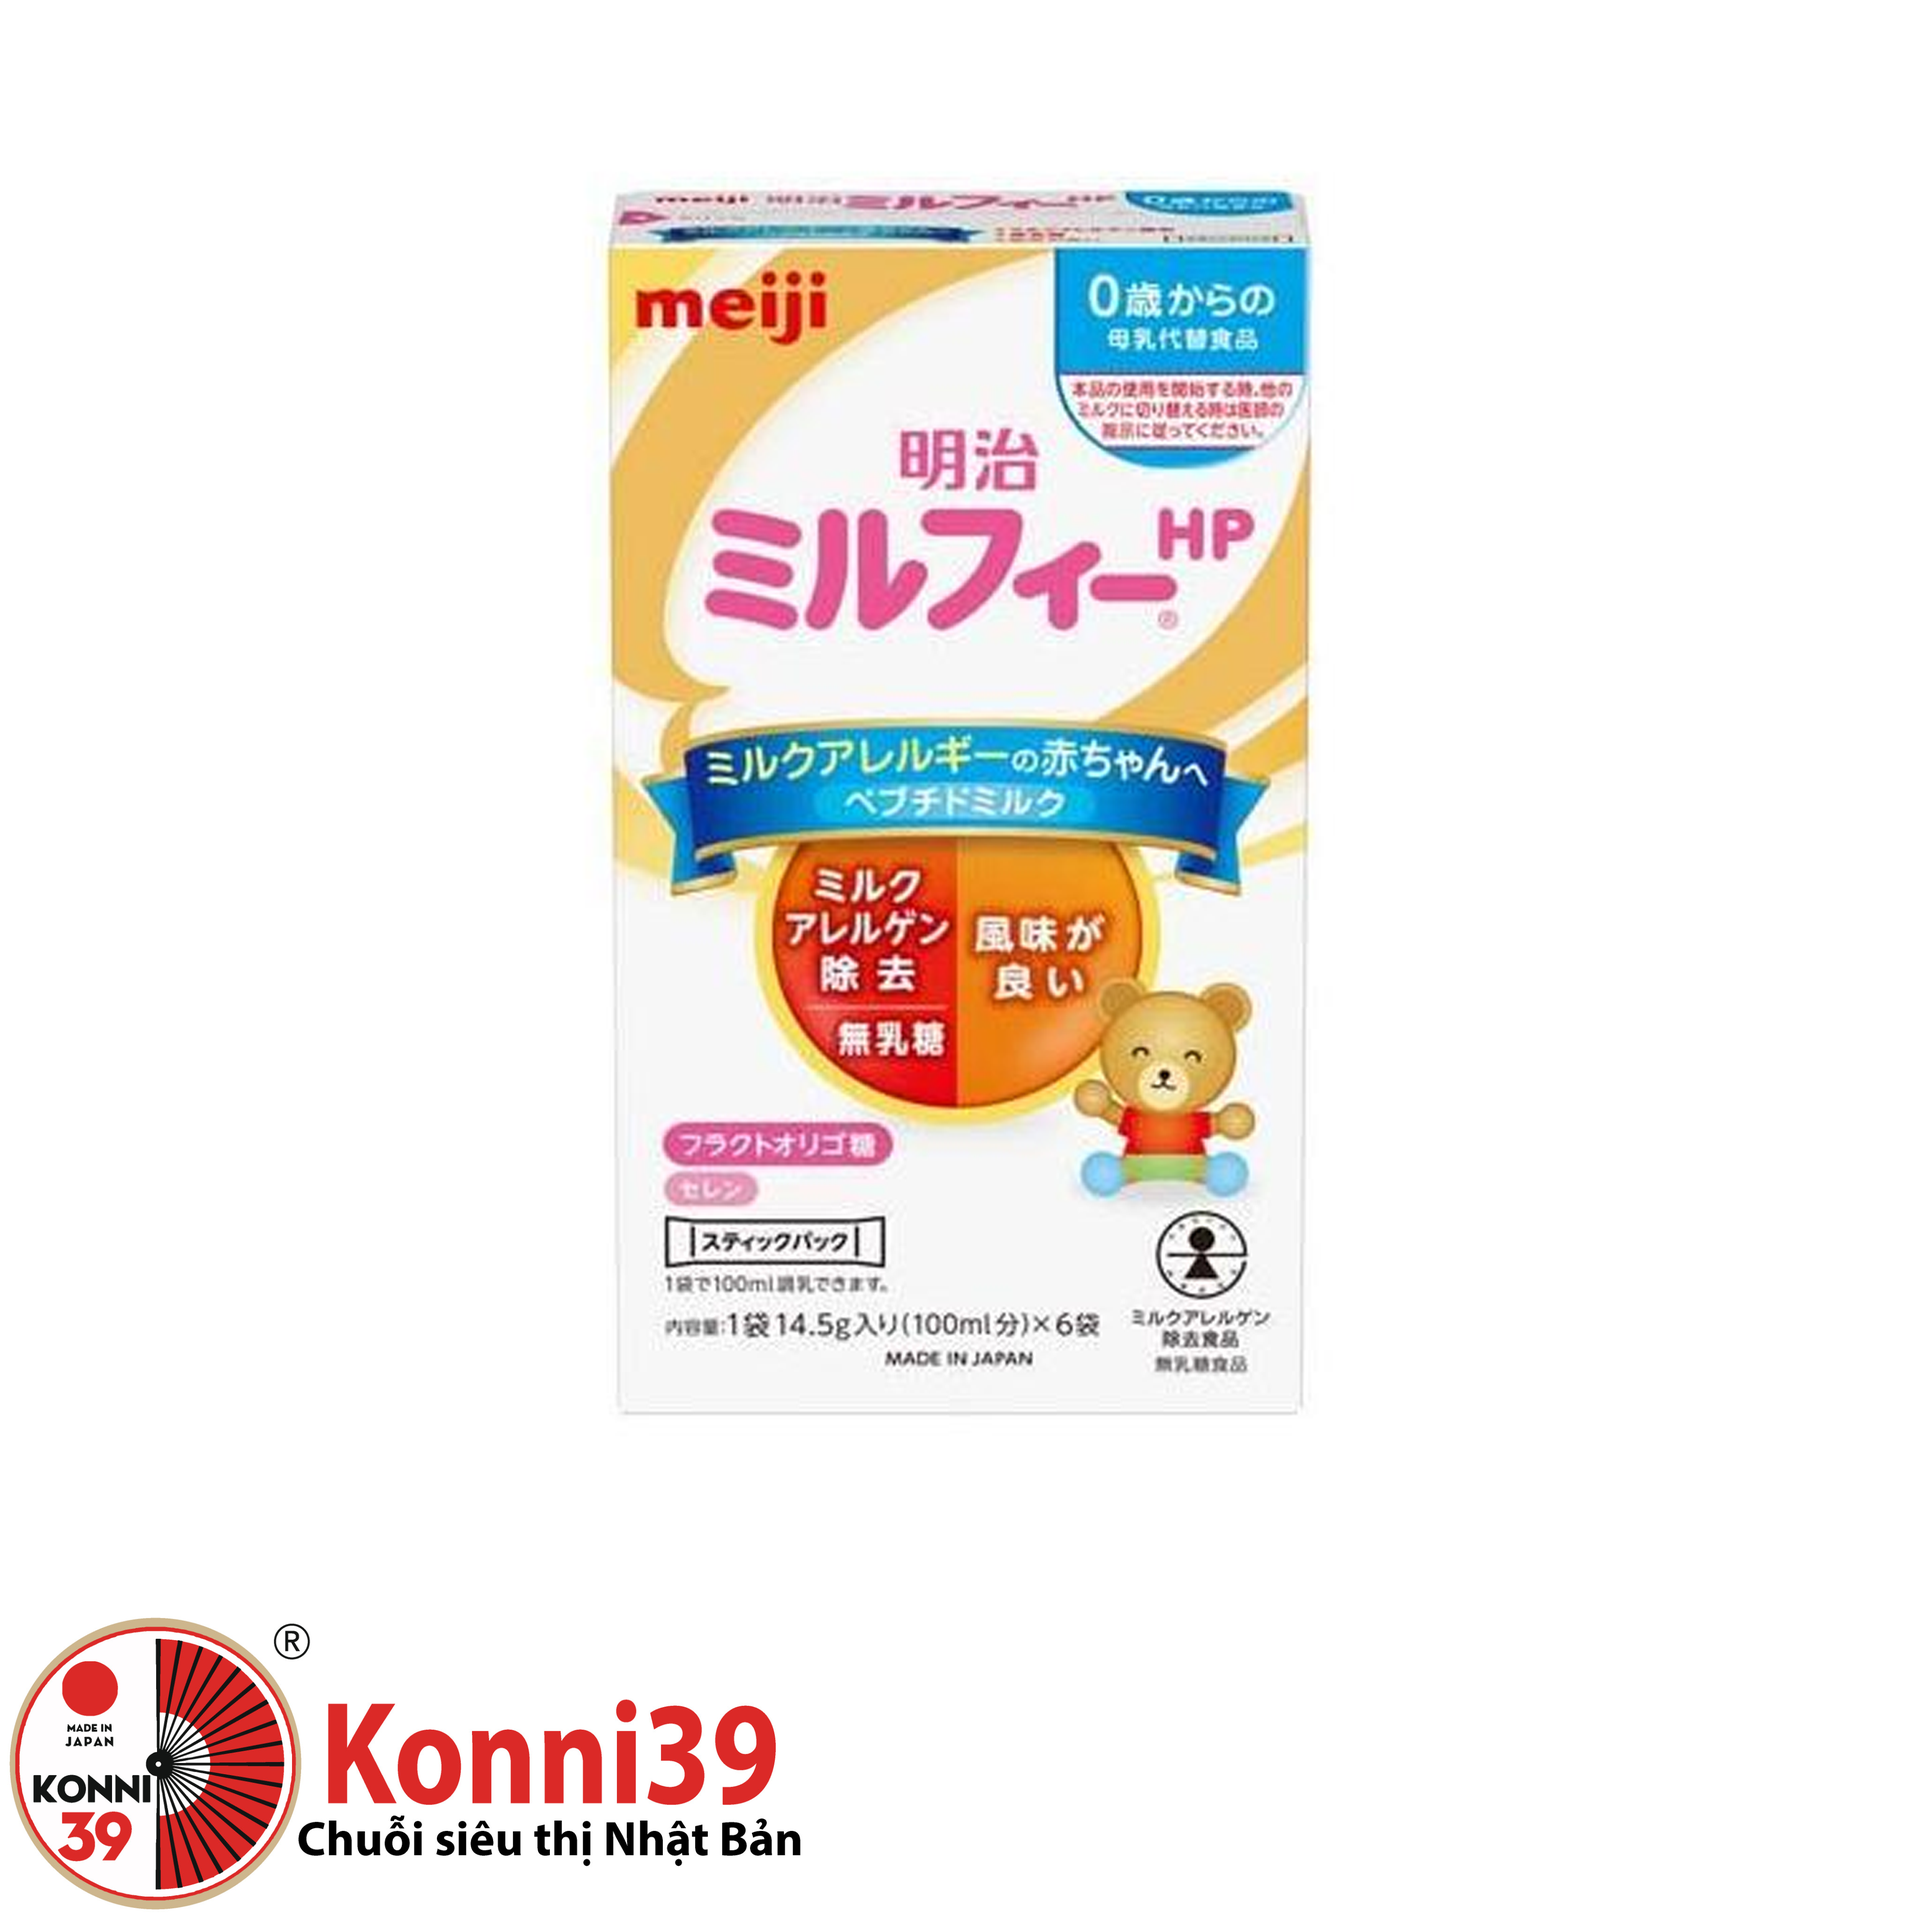 Sữa Meiji HP dị ứng sữa bò dạng thanh (14.5g x 6 thanh)